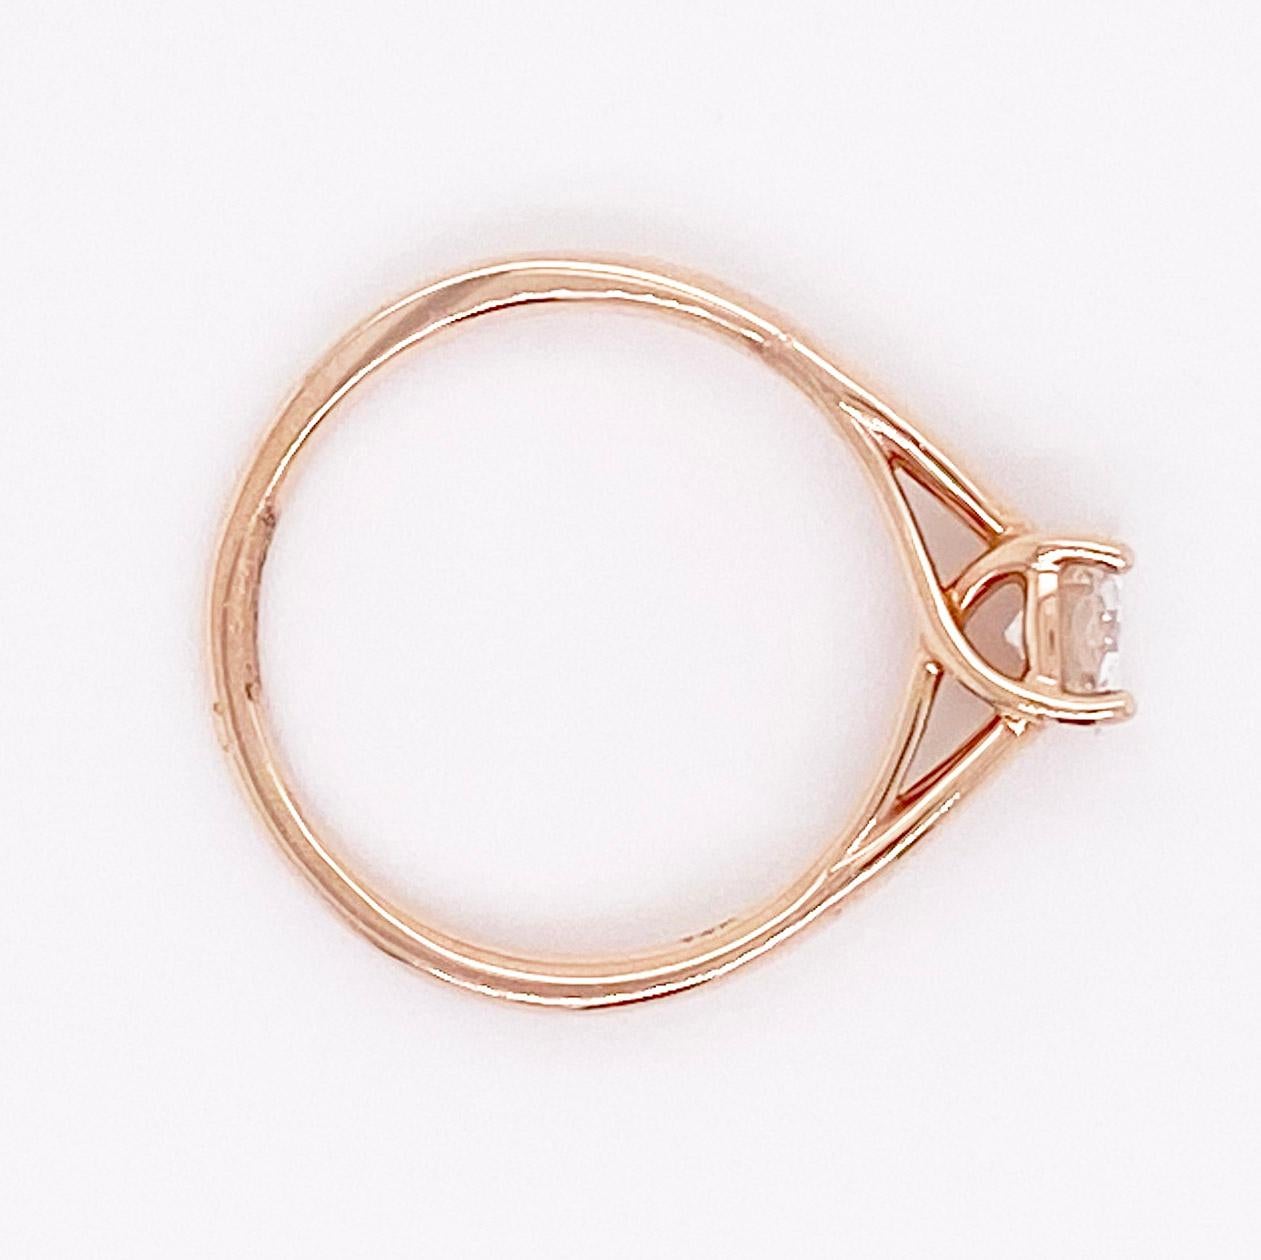 1/2 carat diamond ring rose gold